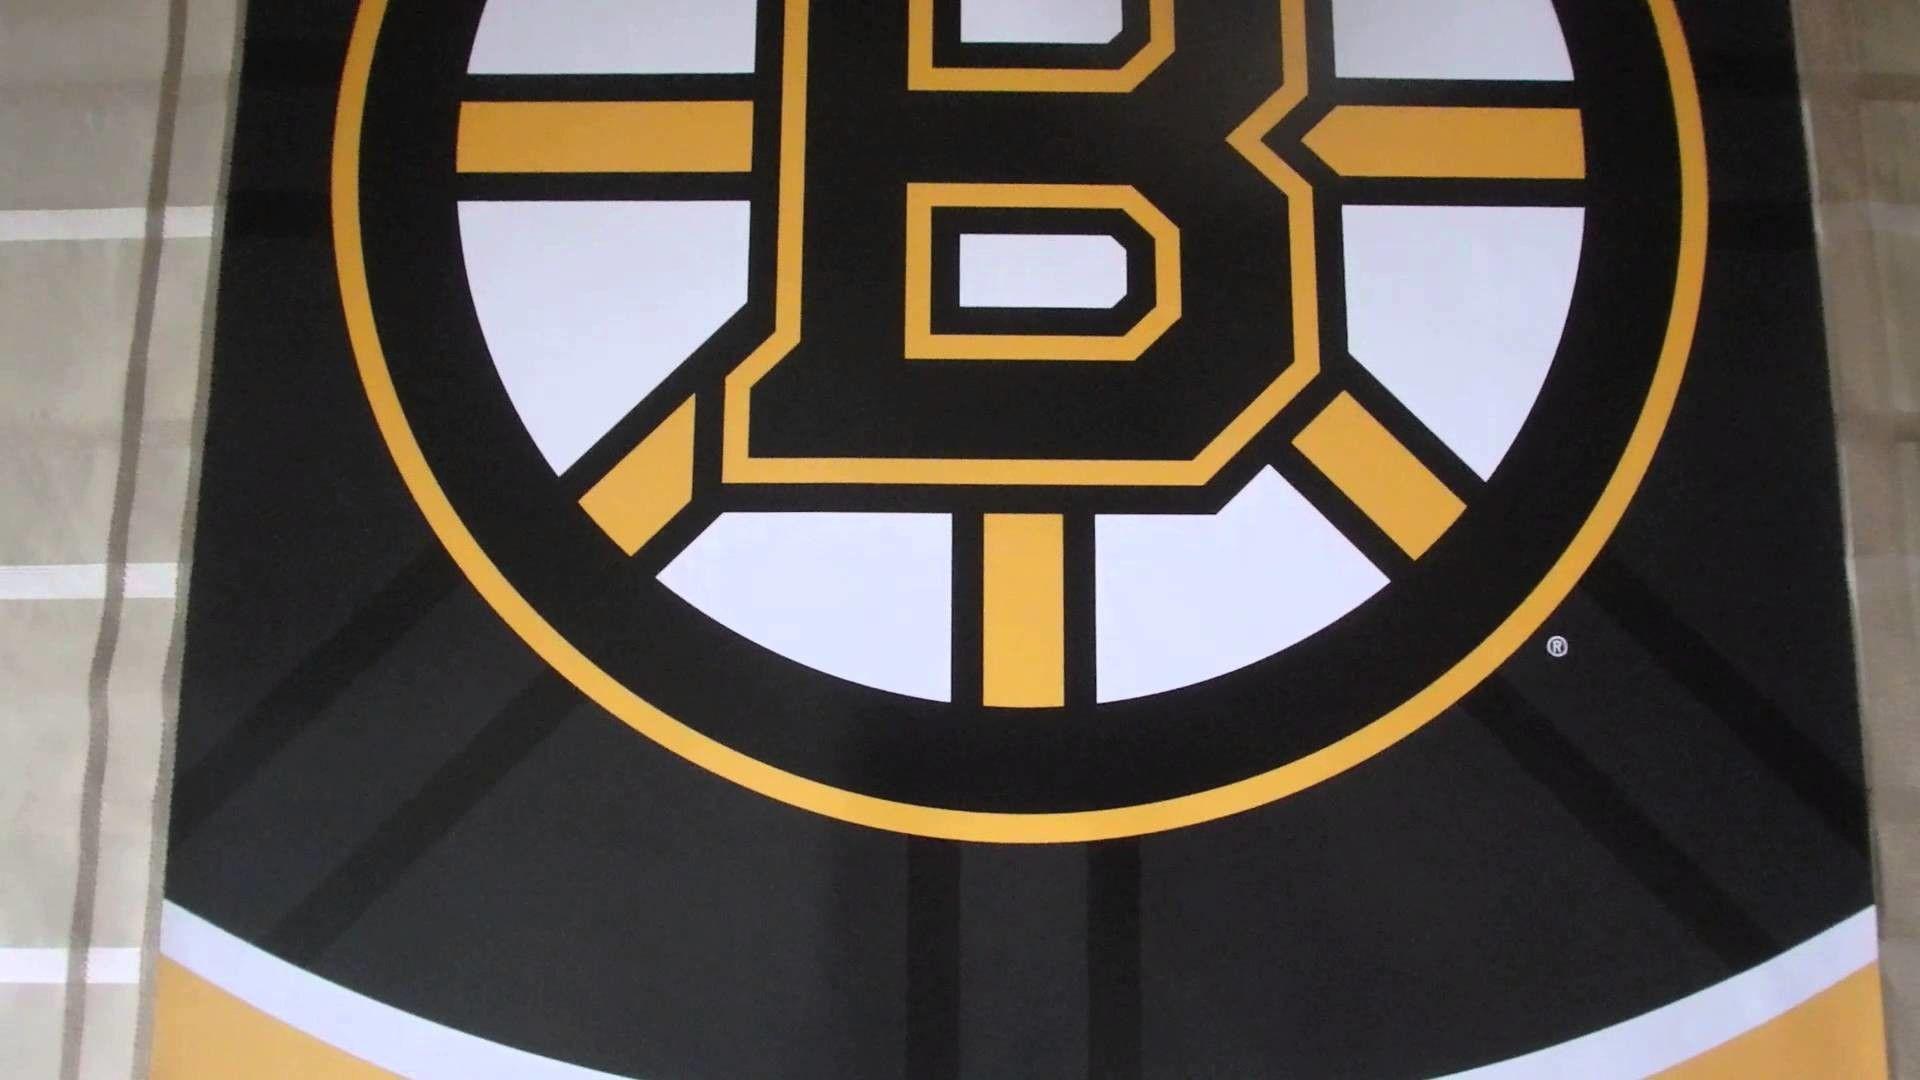 1920x1080 Hình nền đẹp nhất Anime - Nhl Boston Bruins Logo - Hình nền 1920x1080 - teahub.io